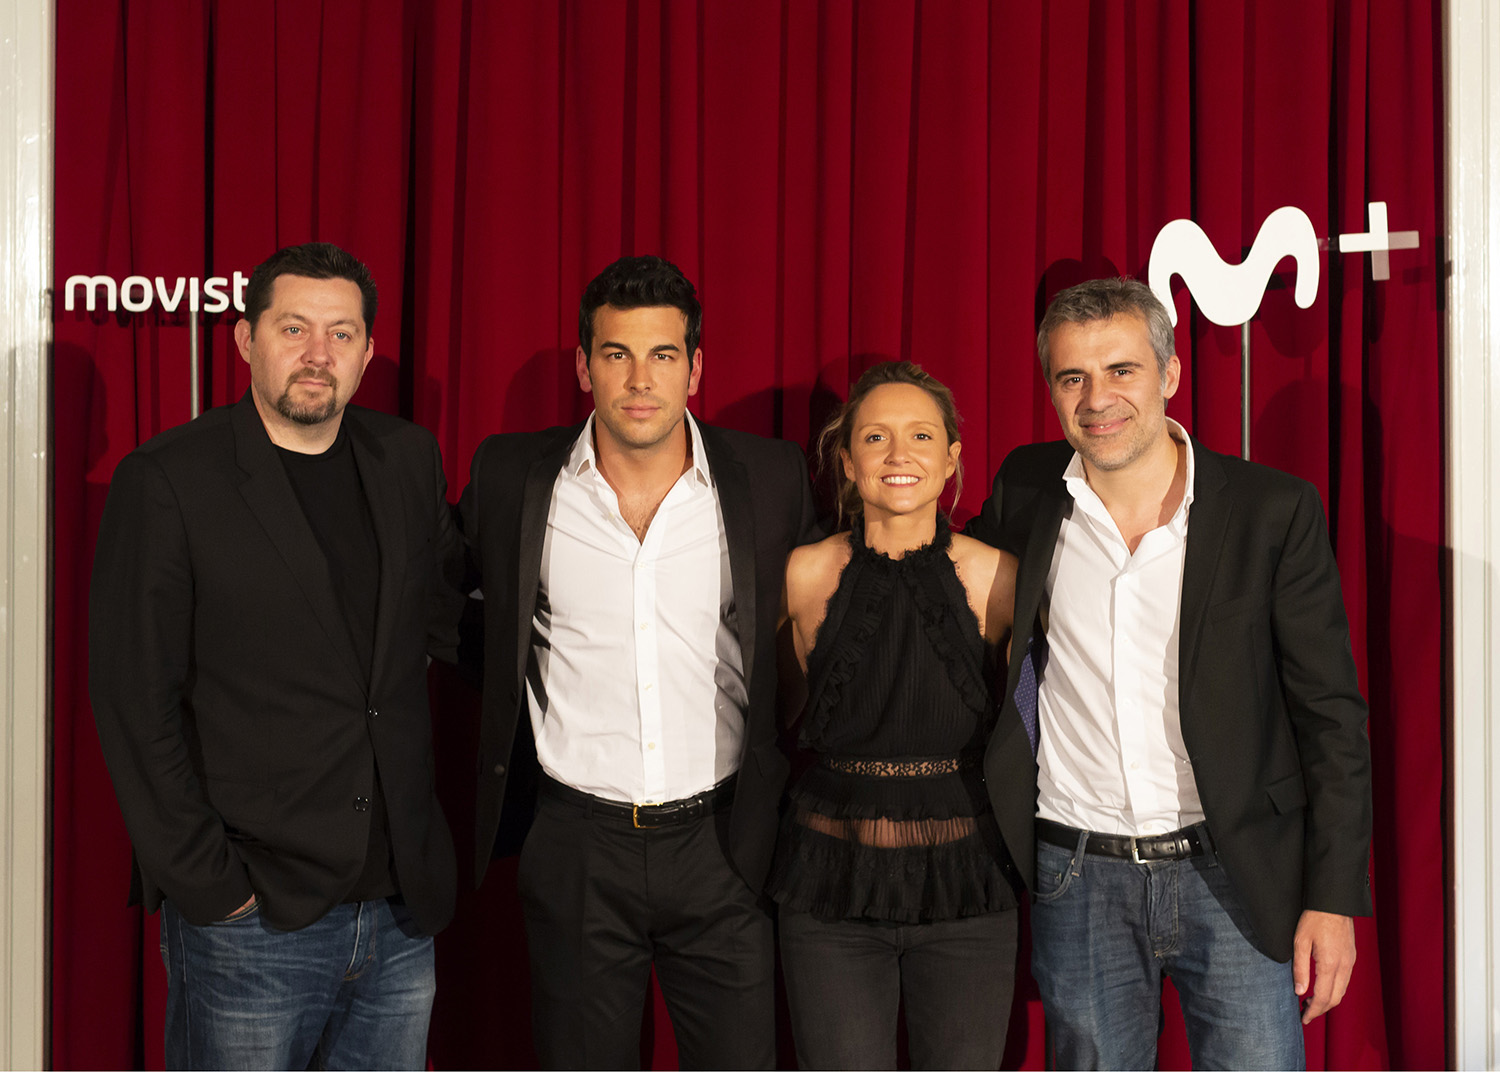 Ayer tuvo lugar la presentación de Instinto, la nueva ficción original de Movistar+, creada por Teresa Fernández-Valdés, Ramón Campos y Gema R. Neira, de Bambú Producciones. Y además cuenta con el actor Mario Casas como protagonista.